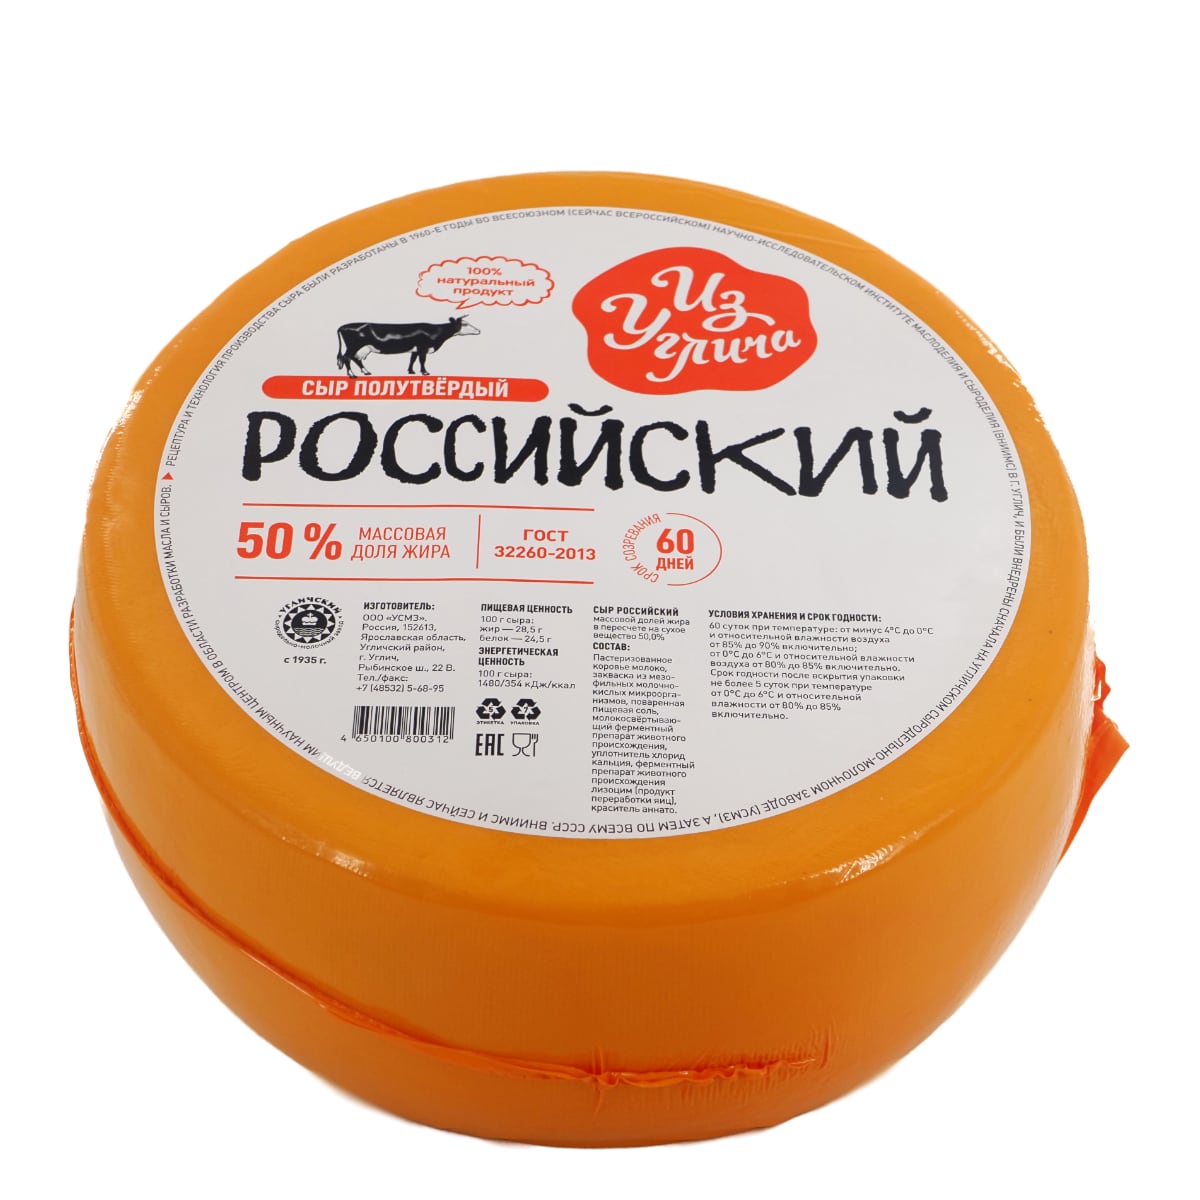 Сыр «Российский» 50%